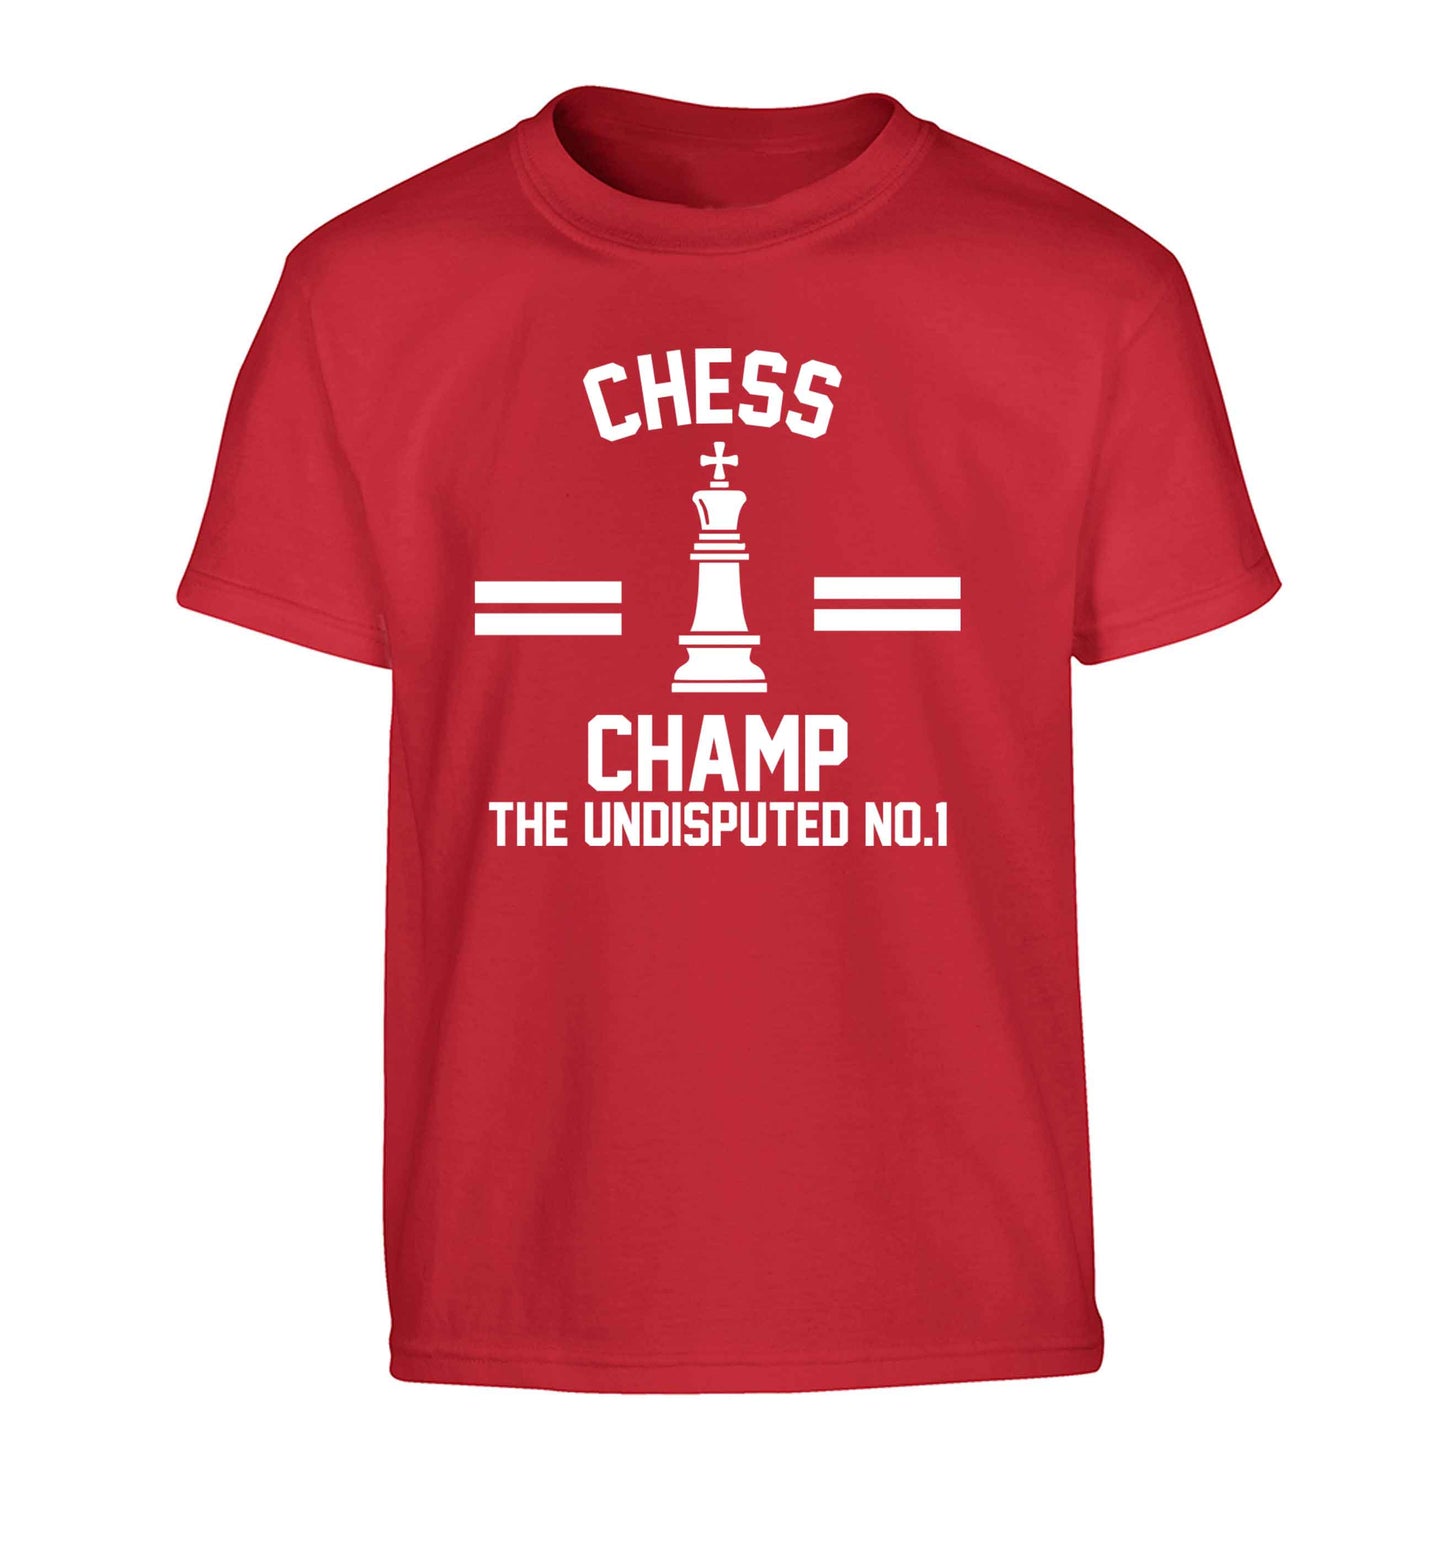 Undisputed chess championship no.1  Children's red Tshirt 12-13 Years